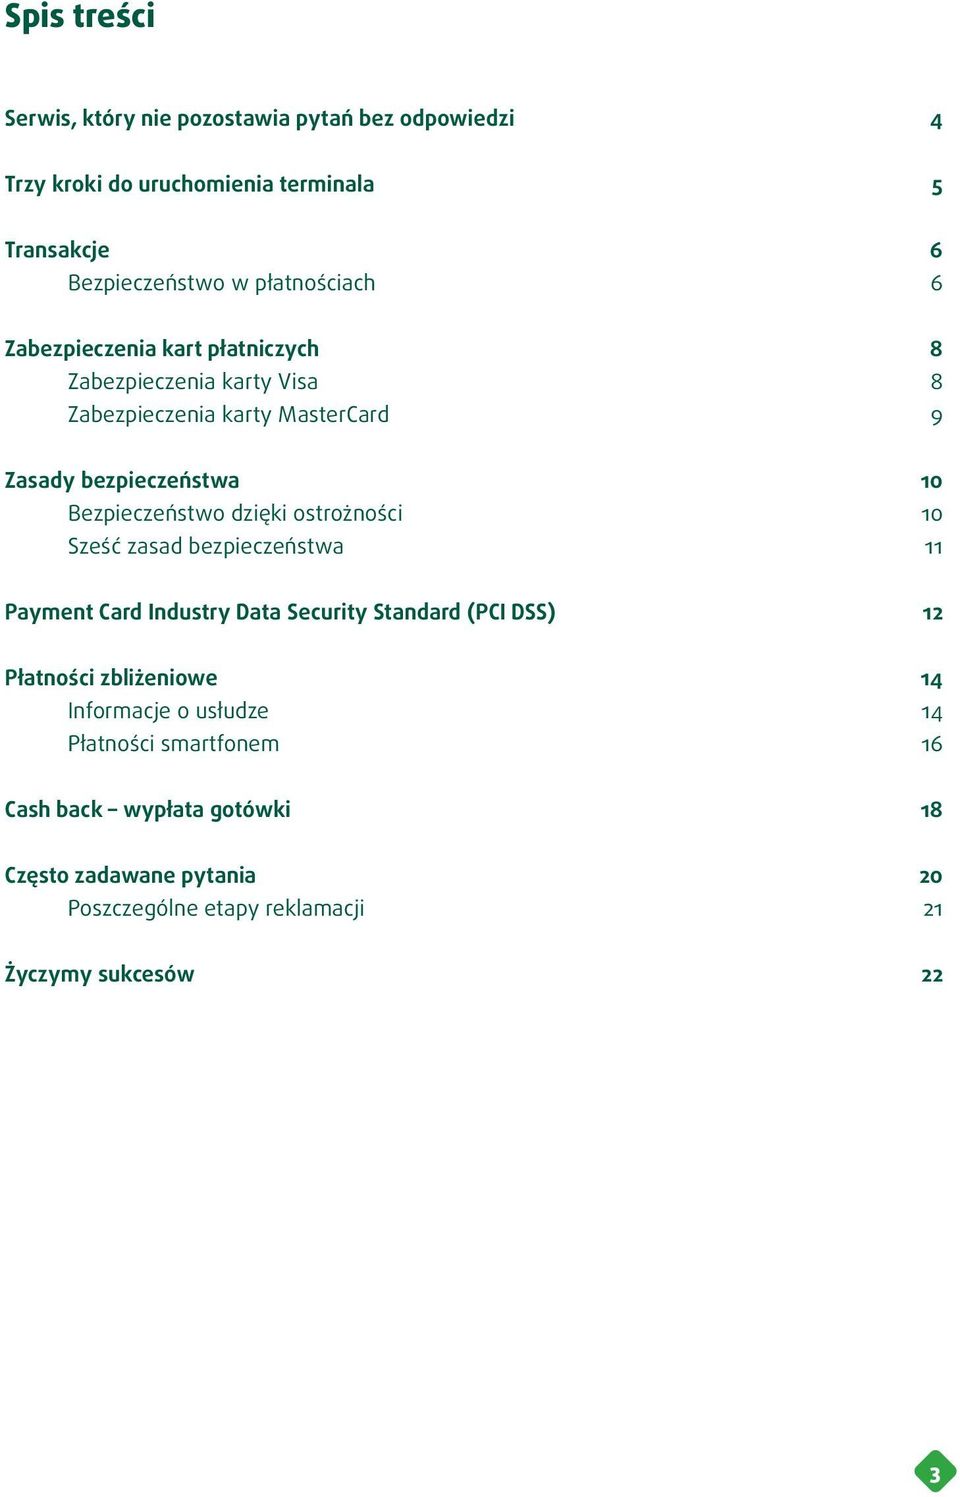 Bezpieczeństwo dzięki ostrożności 10 Sześć zasad bezpieczeństwa 11 Payment Card Industry Data Security Standard (PCI DSS) 12 Płatności